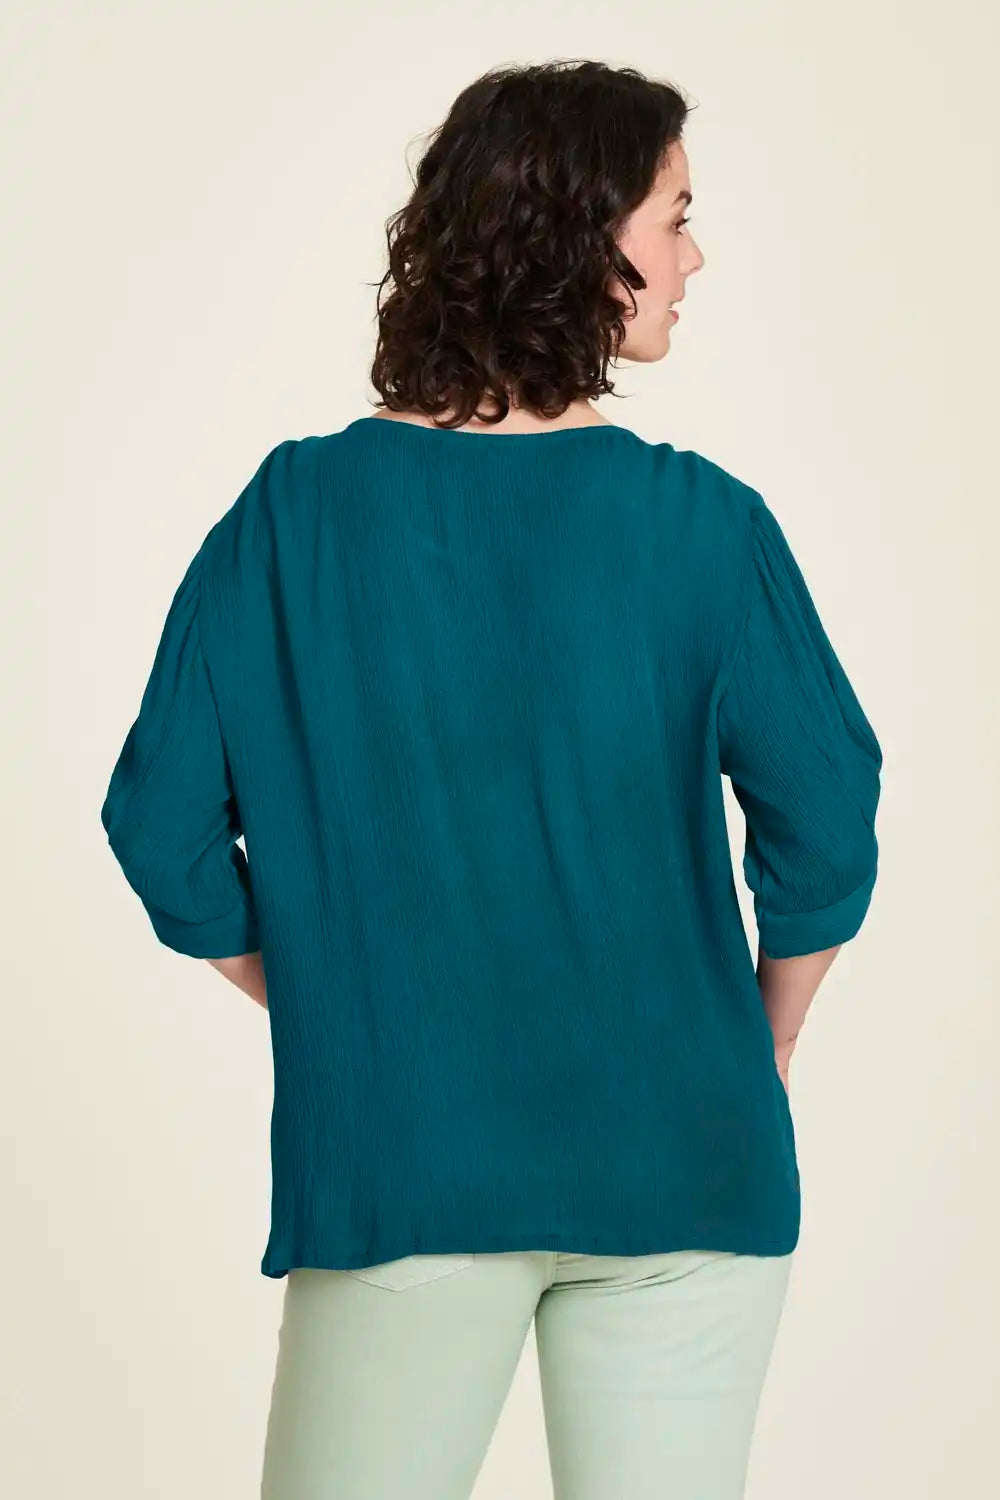 Tranquillo | Blusa Donna in Viscosa EcoVero | Abbigliamento ecologico